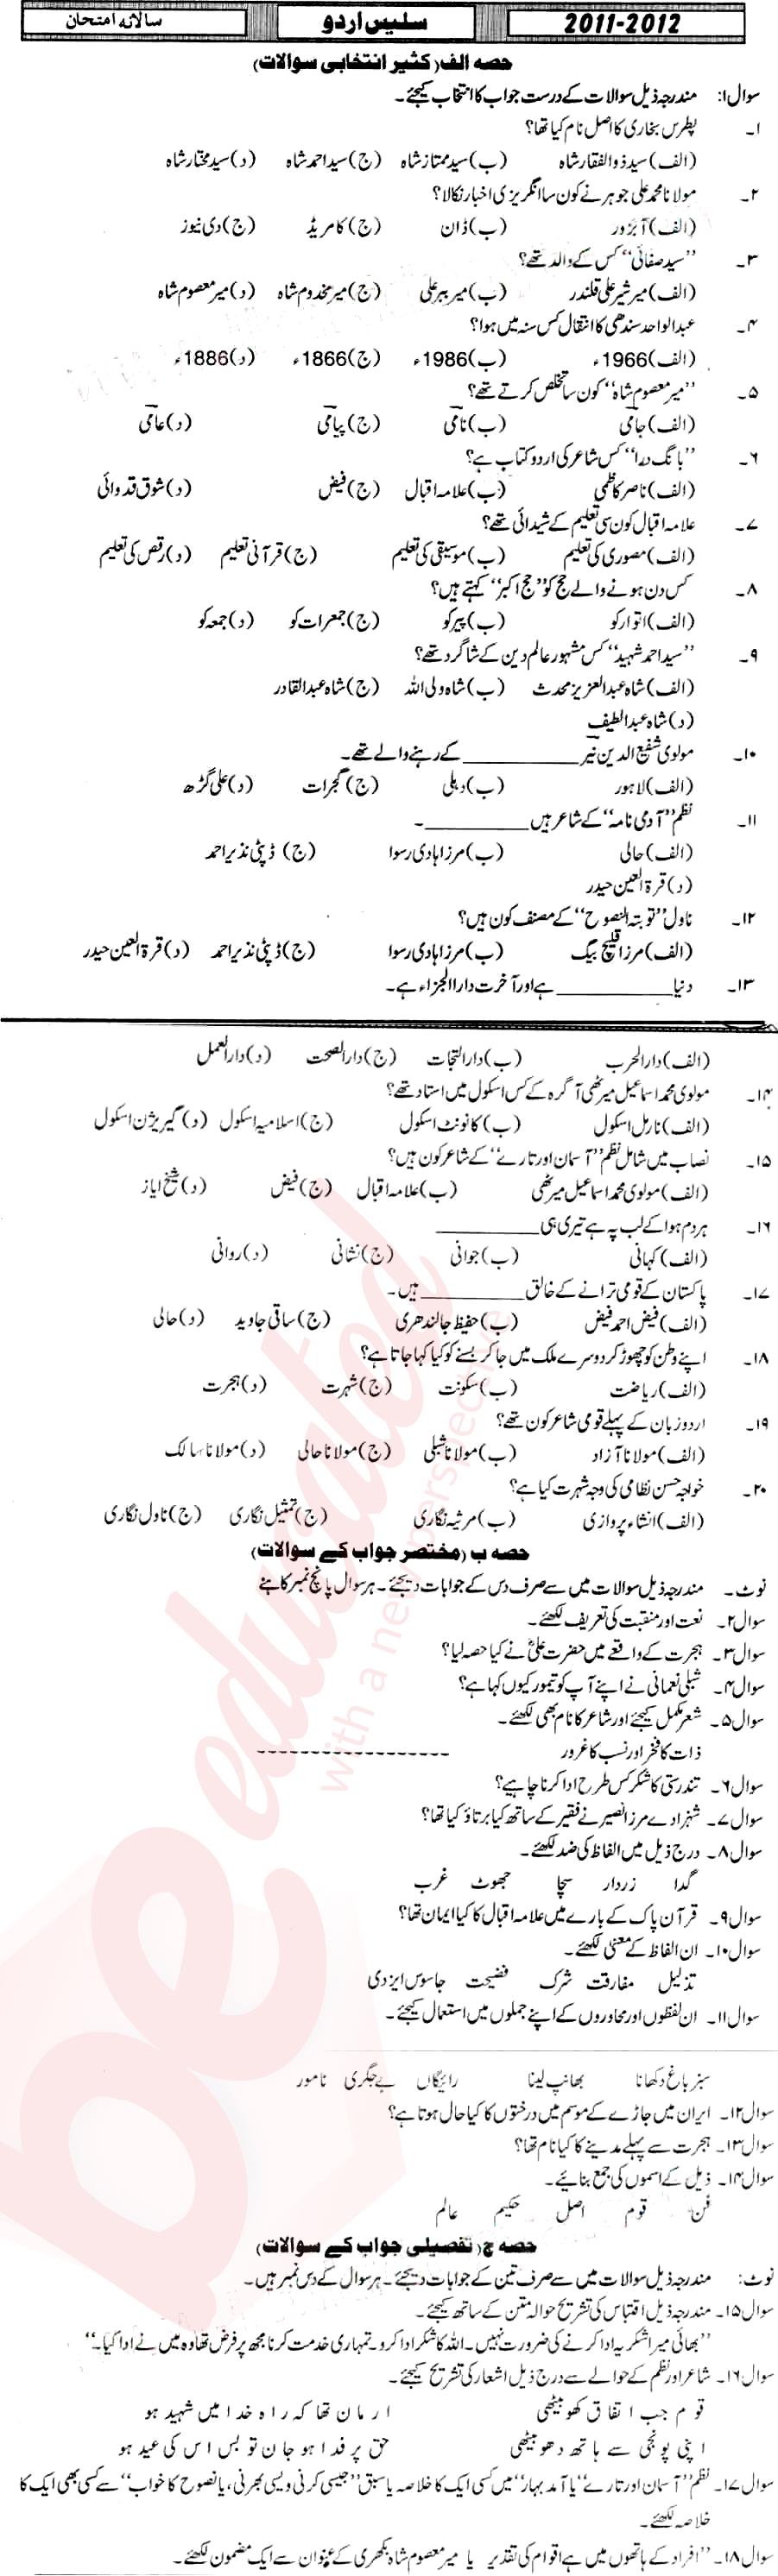 Urdu 11th class Past Paper Group 1 BISE Mirpurkhas 2012